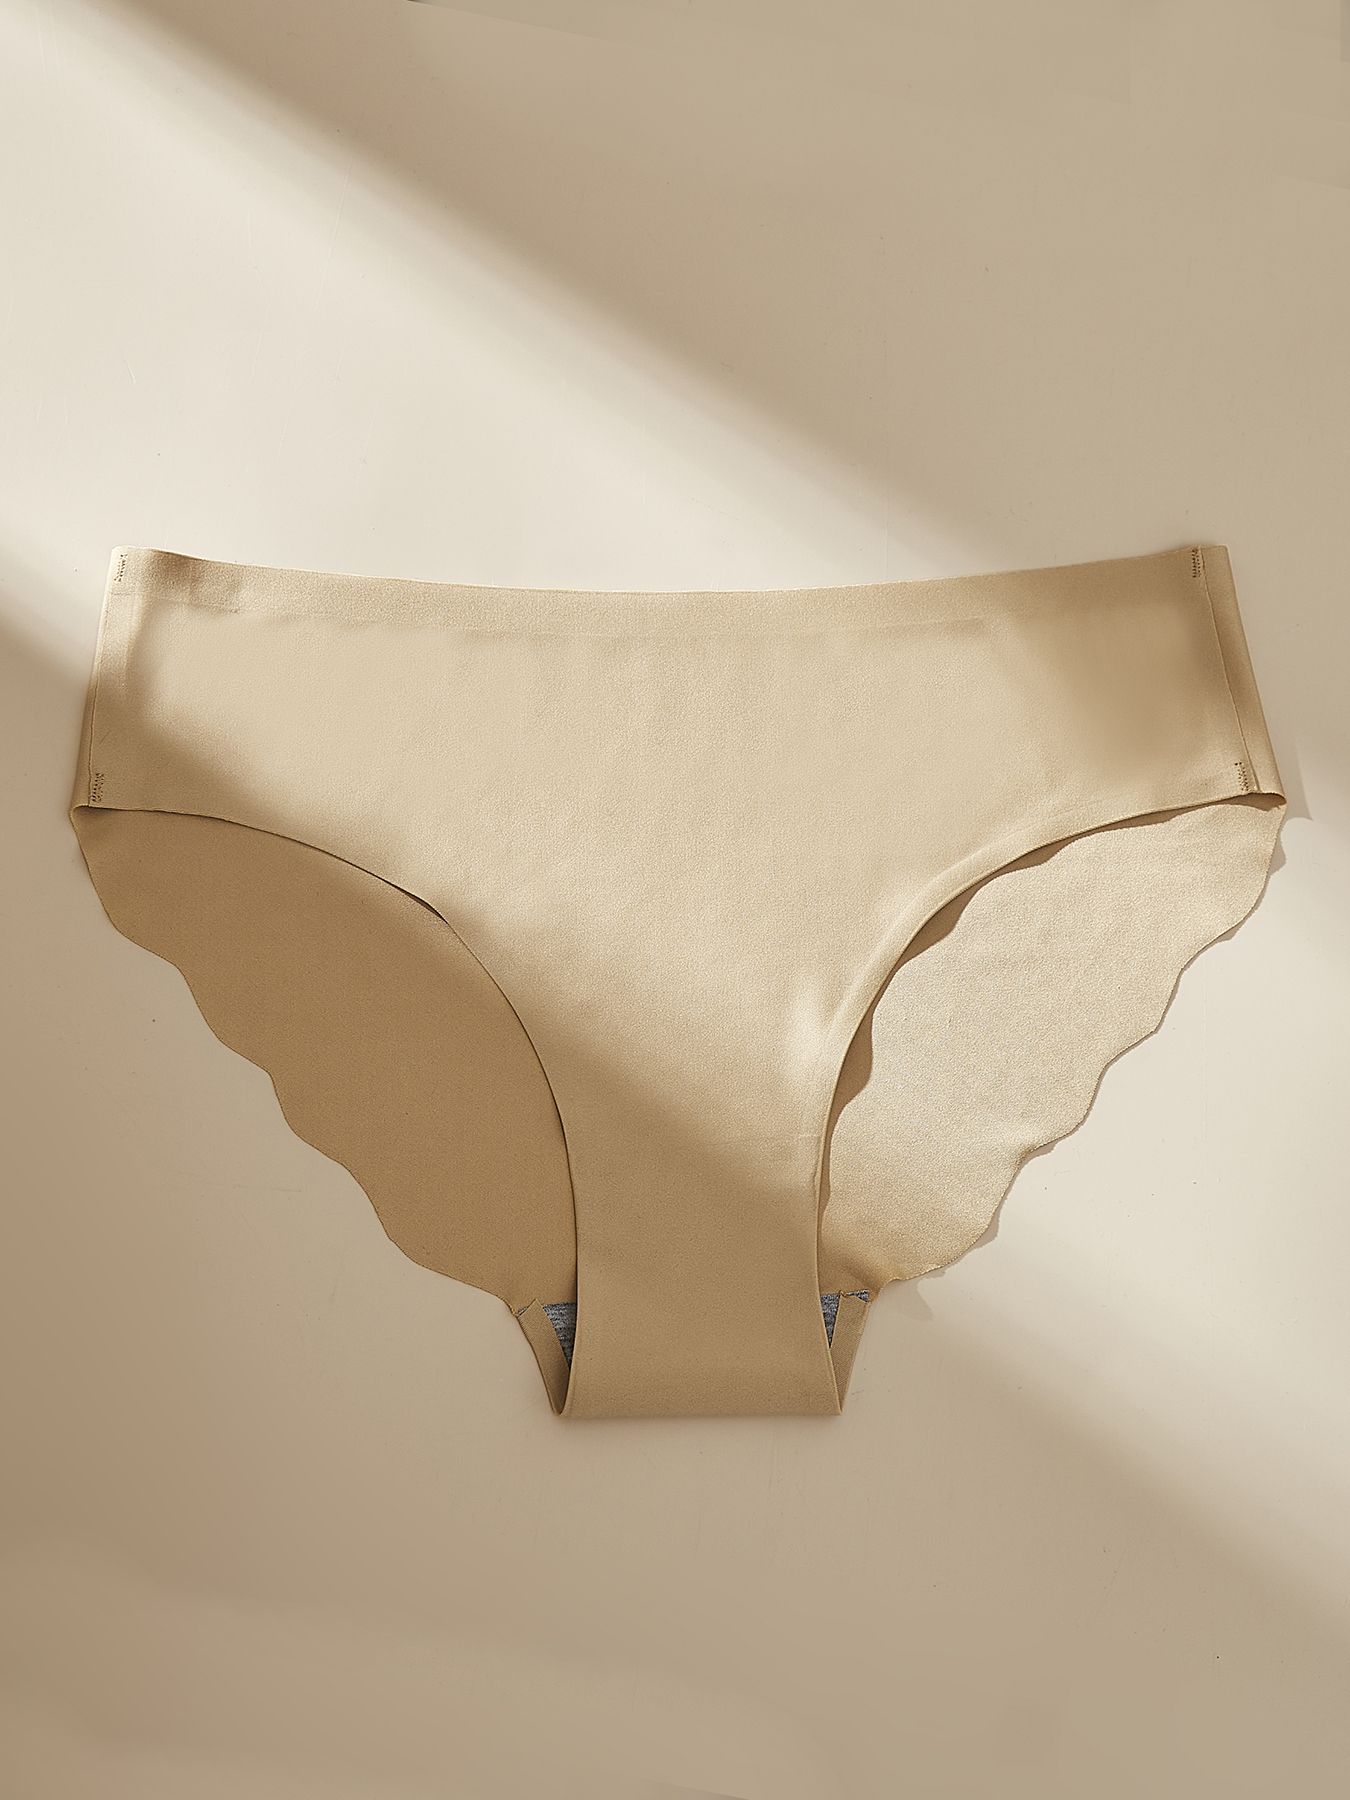 4 PCS/Lot Seamless Panties for Women Plain Panties Slip Silk Female  Underwear Soft Thin Light Panti Culotte Femme Underpants (Color : 2black  Beige Coffee, Size : 4pcs) : : Clothing, Shoes & Accessories